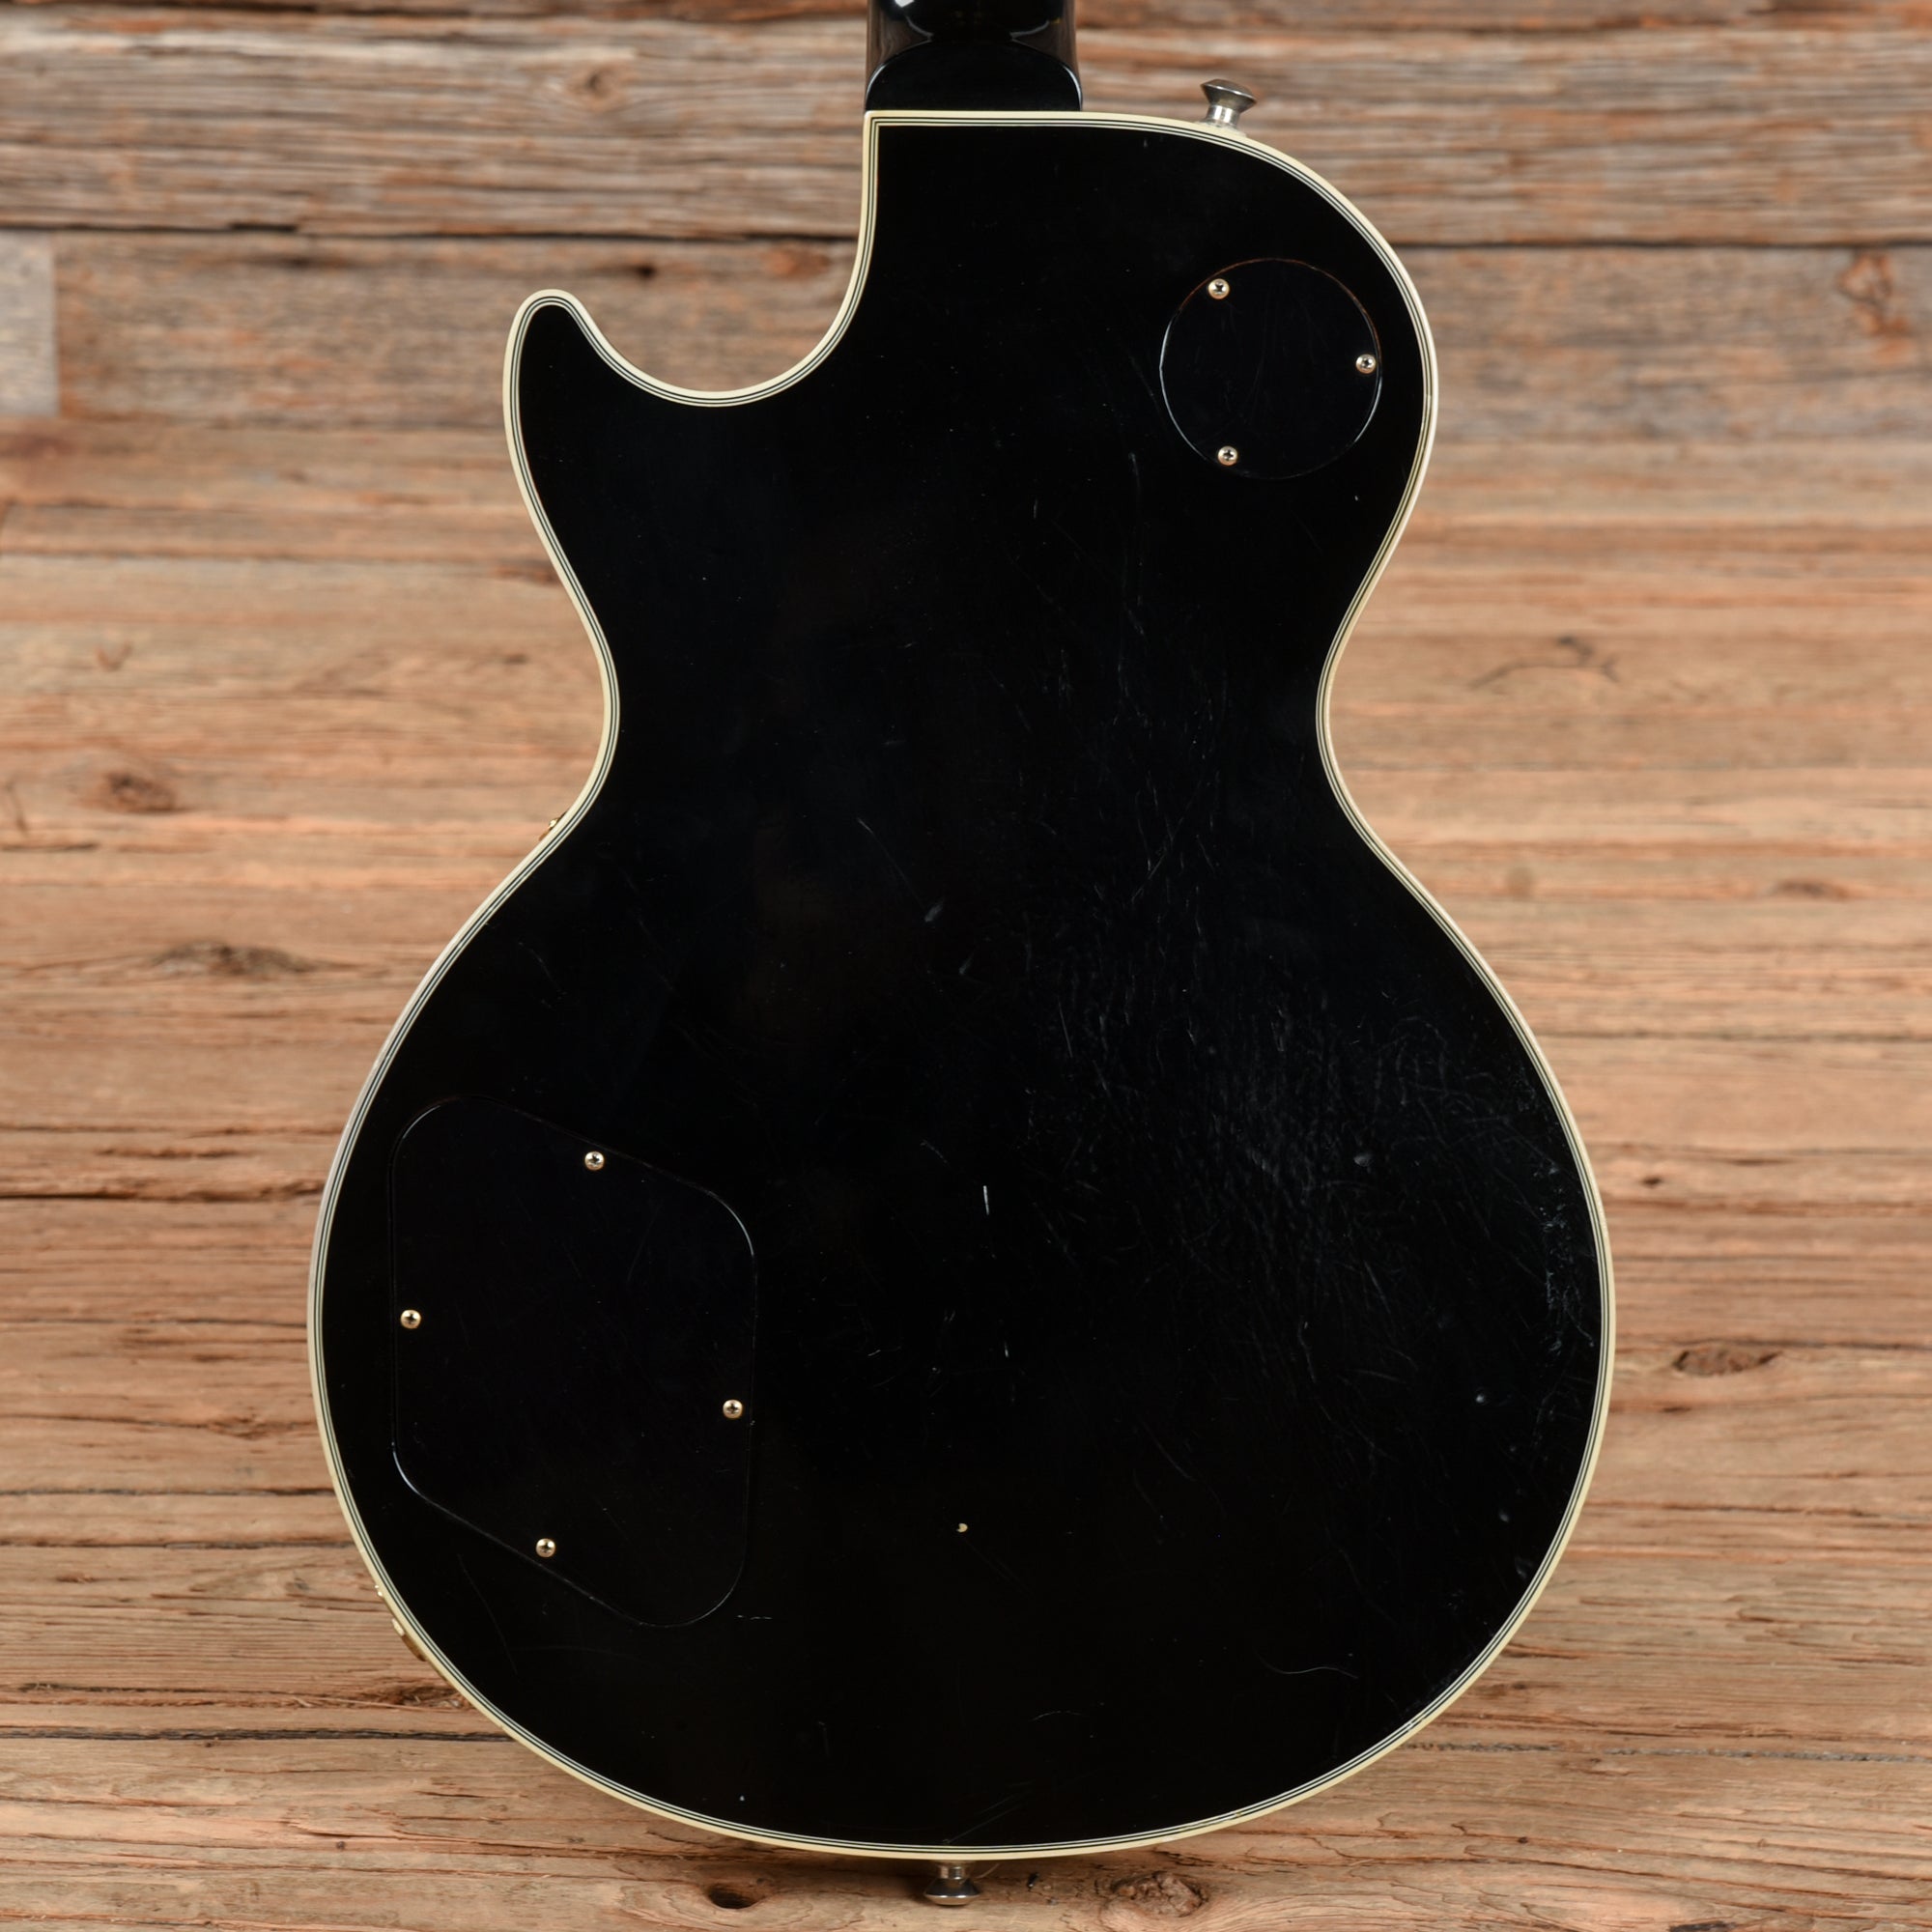 Gibson Custom Les Paul Custom Ebony 2005